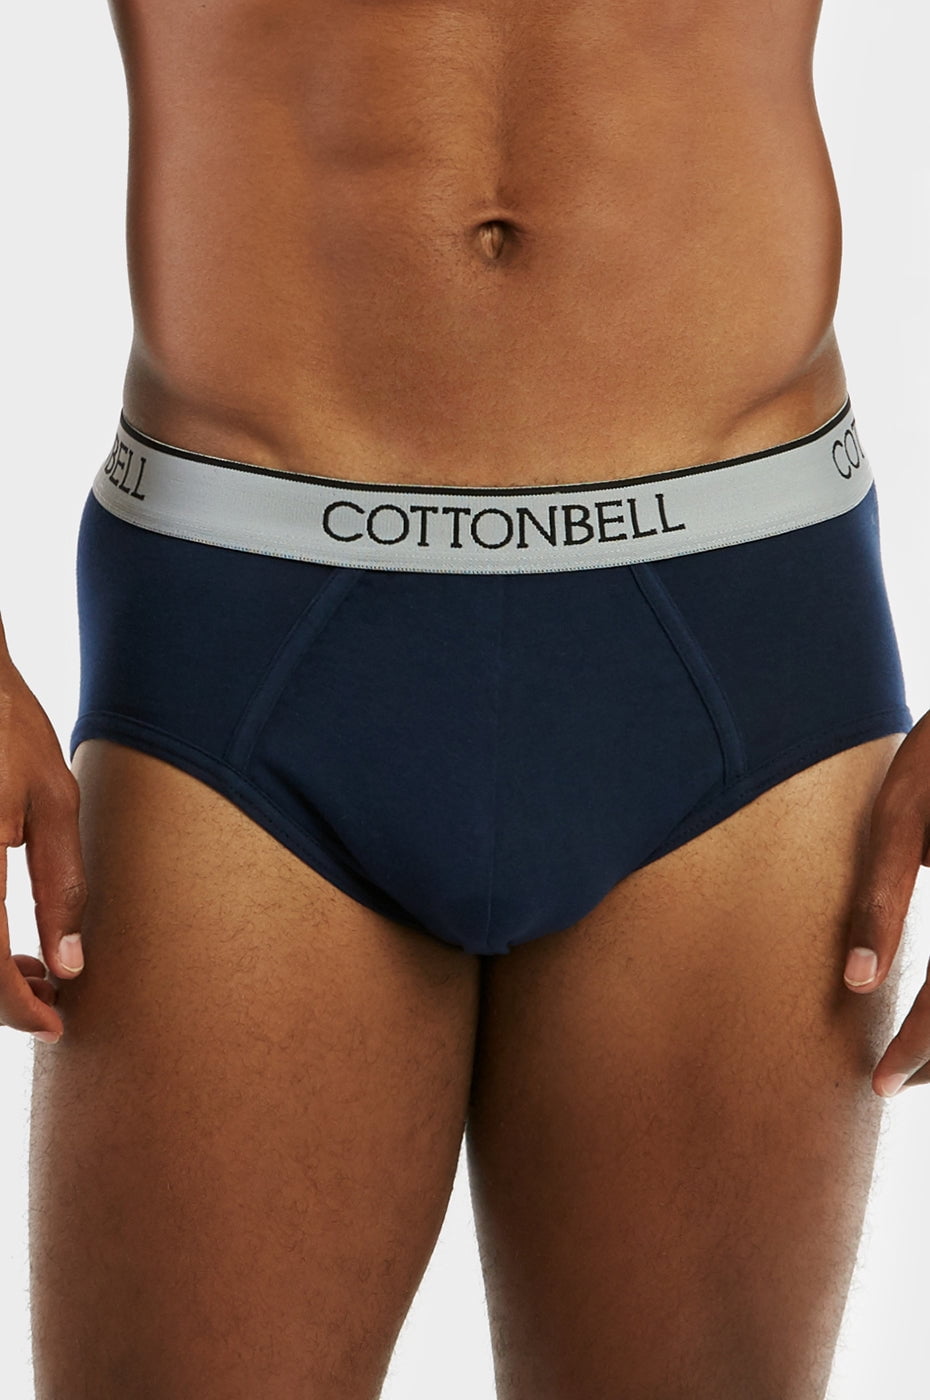 Men's Cotton Stretch Band Basic Bikini Brief Underwear - 2 Packs 